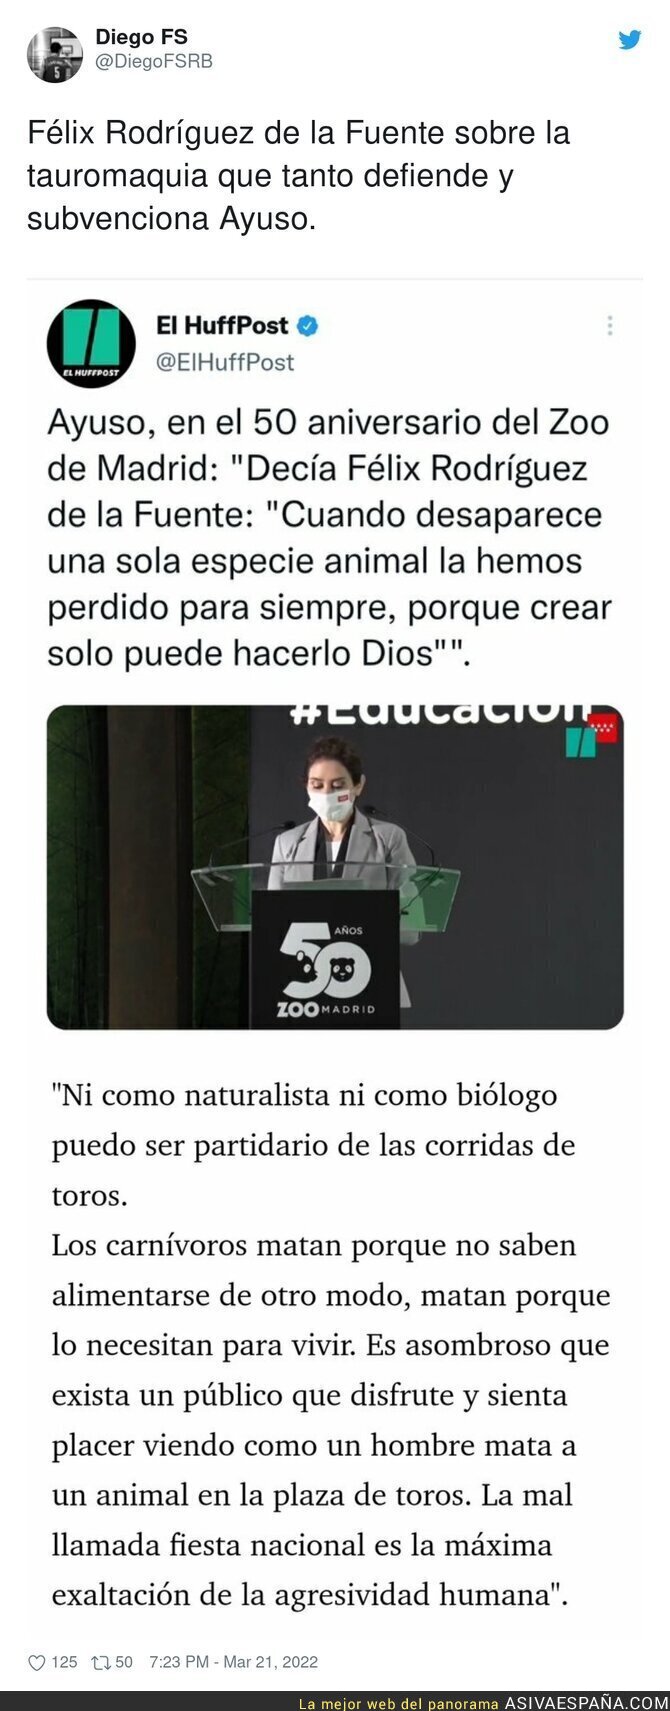 Isabel Díaz Ayuso menciona a Felix Rodríguez de la Fuente y la desaparición de especies